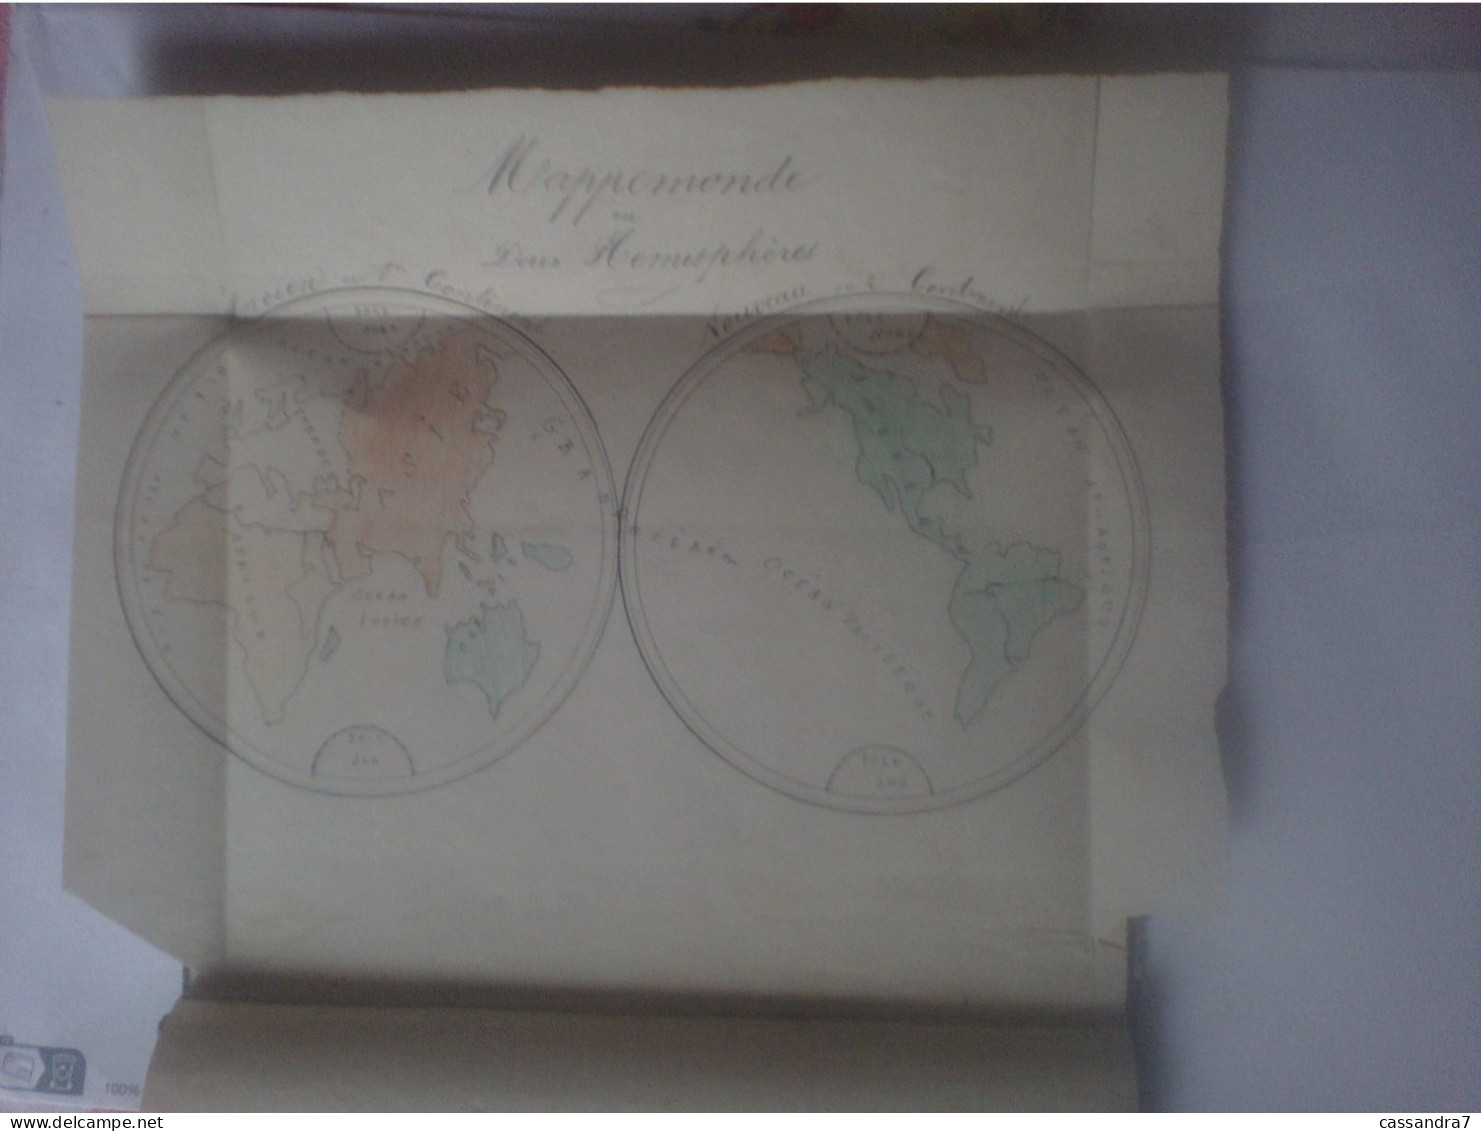 Scolaire - Carnet De Géographie à Lafargue Aramis Acheté Le 8 Décembre 1876 Avec Cartes Et Dessins Manuscrits - Unclassified